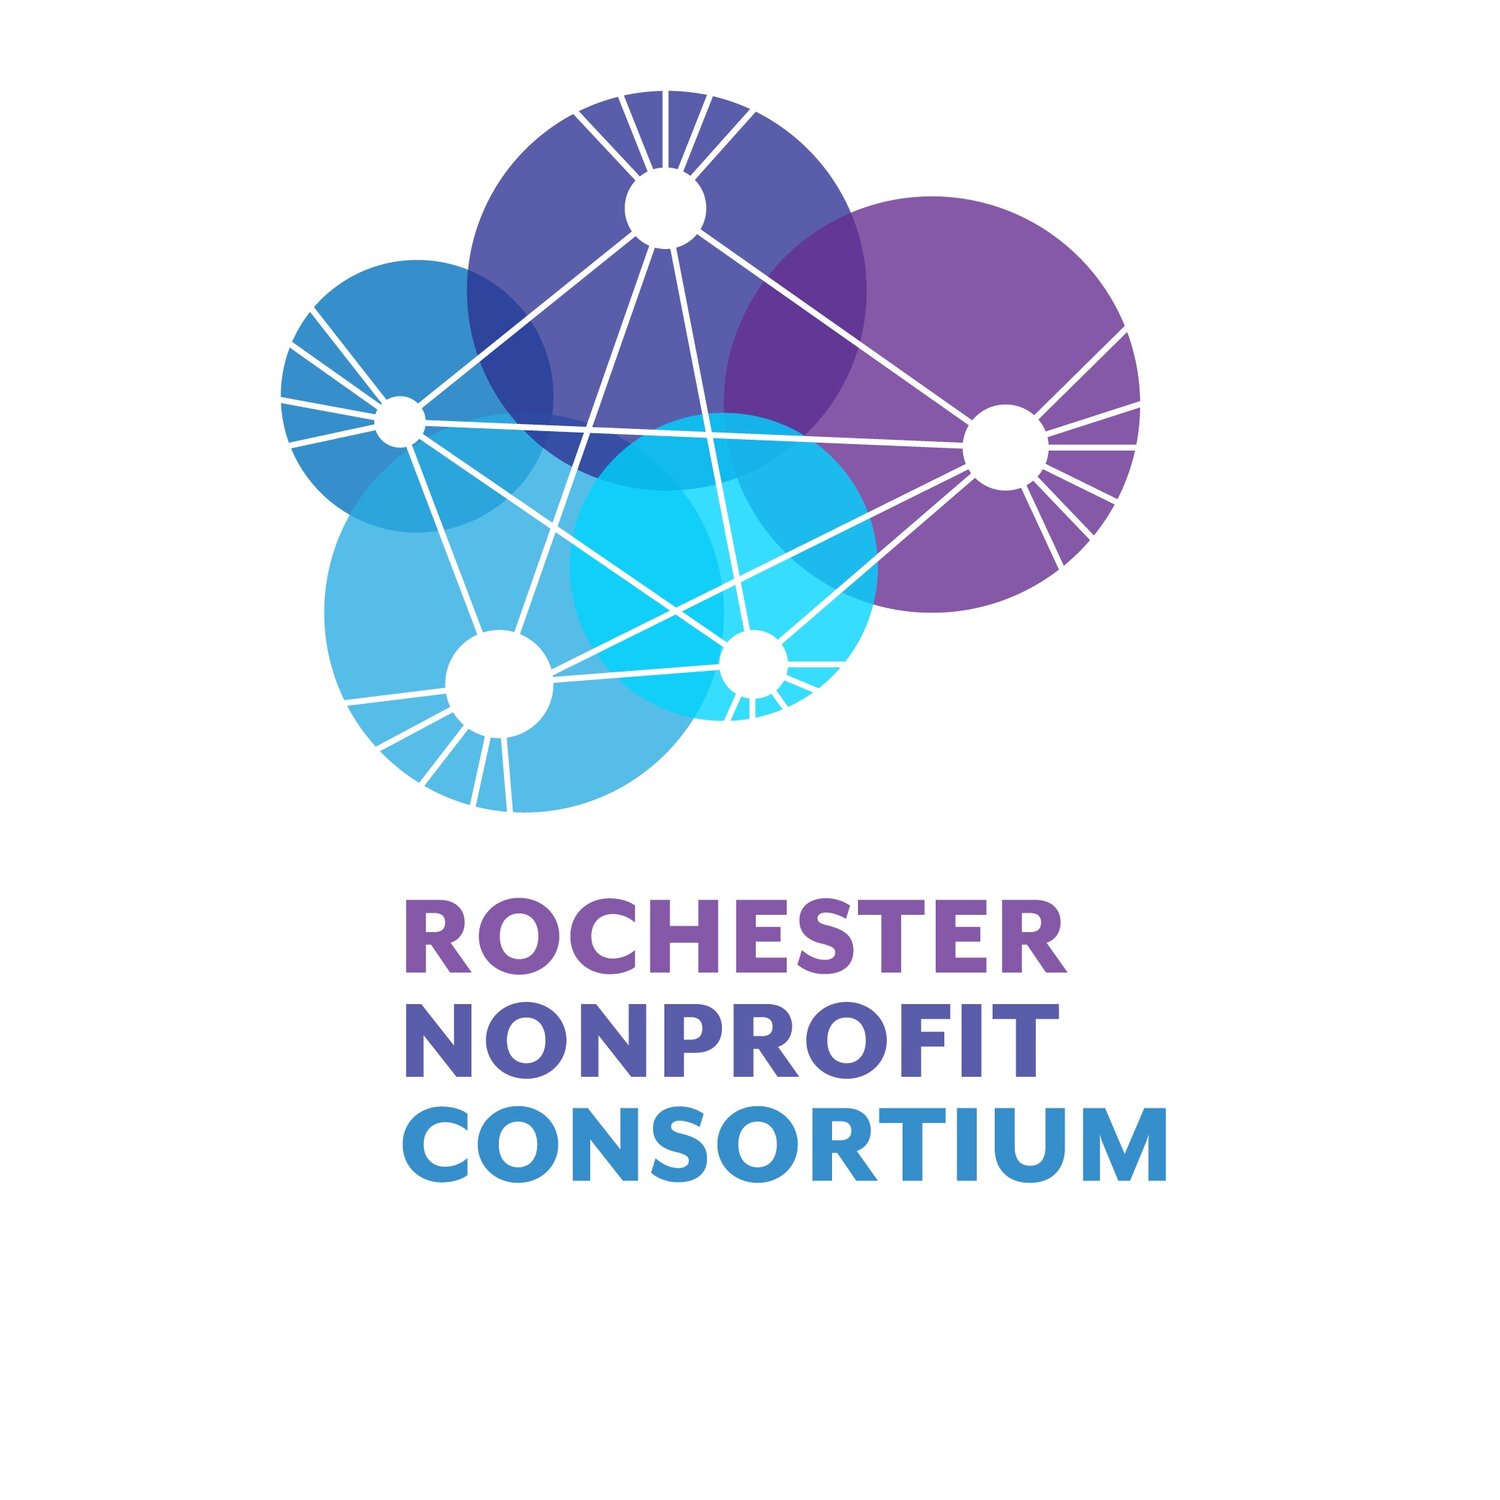 Rochester Nonprofit Consortium